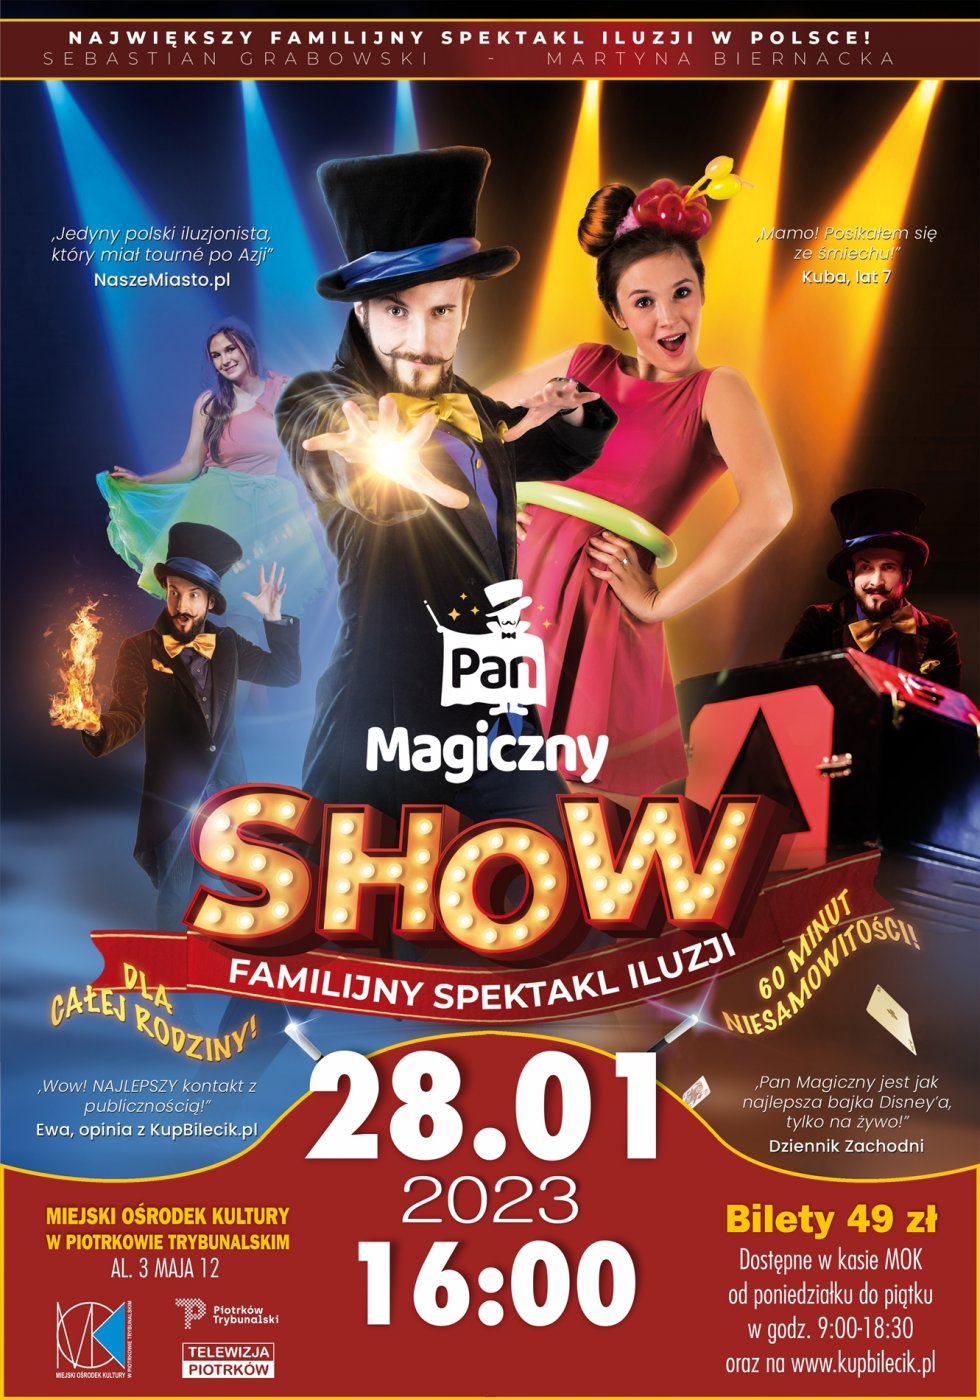 Pan Magiczny Show - familijny spektakl iluzji 